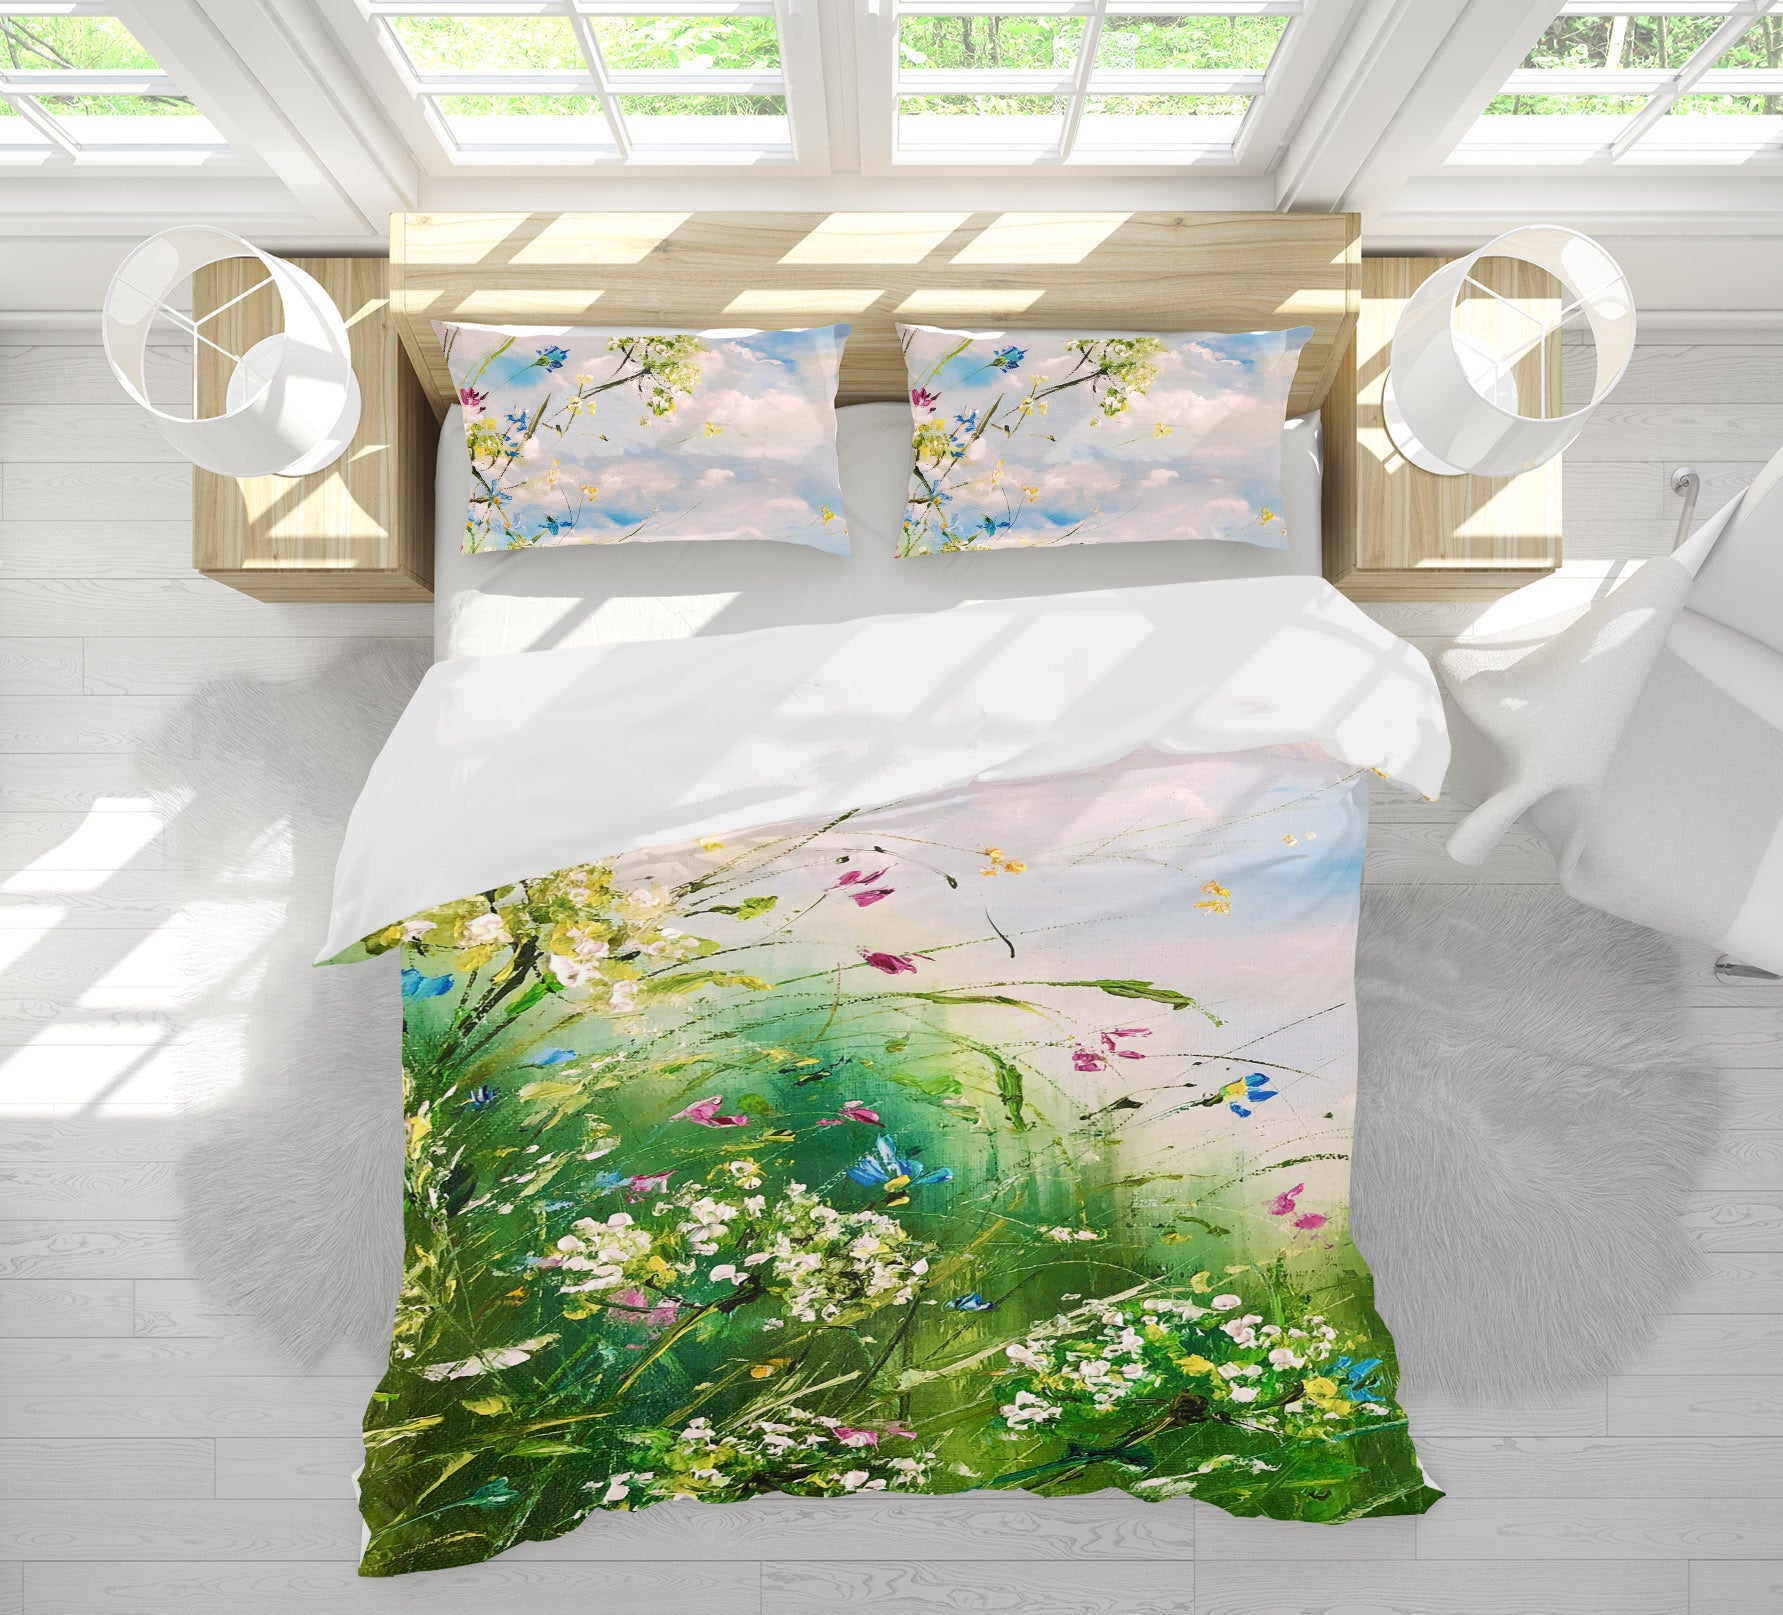 3D Cloud Garden 557 Skromova Marina Bedding Bed Pillowcases Quilt